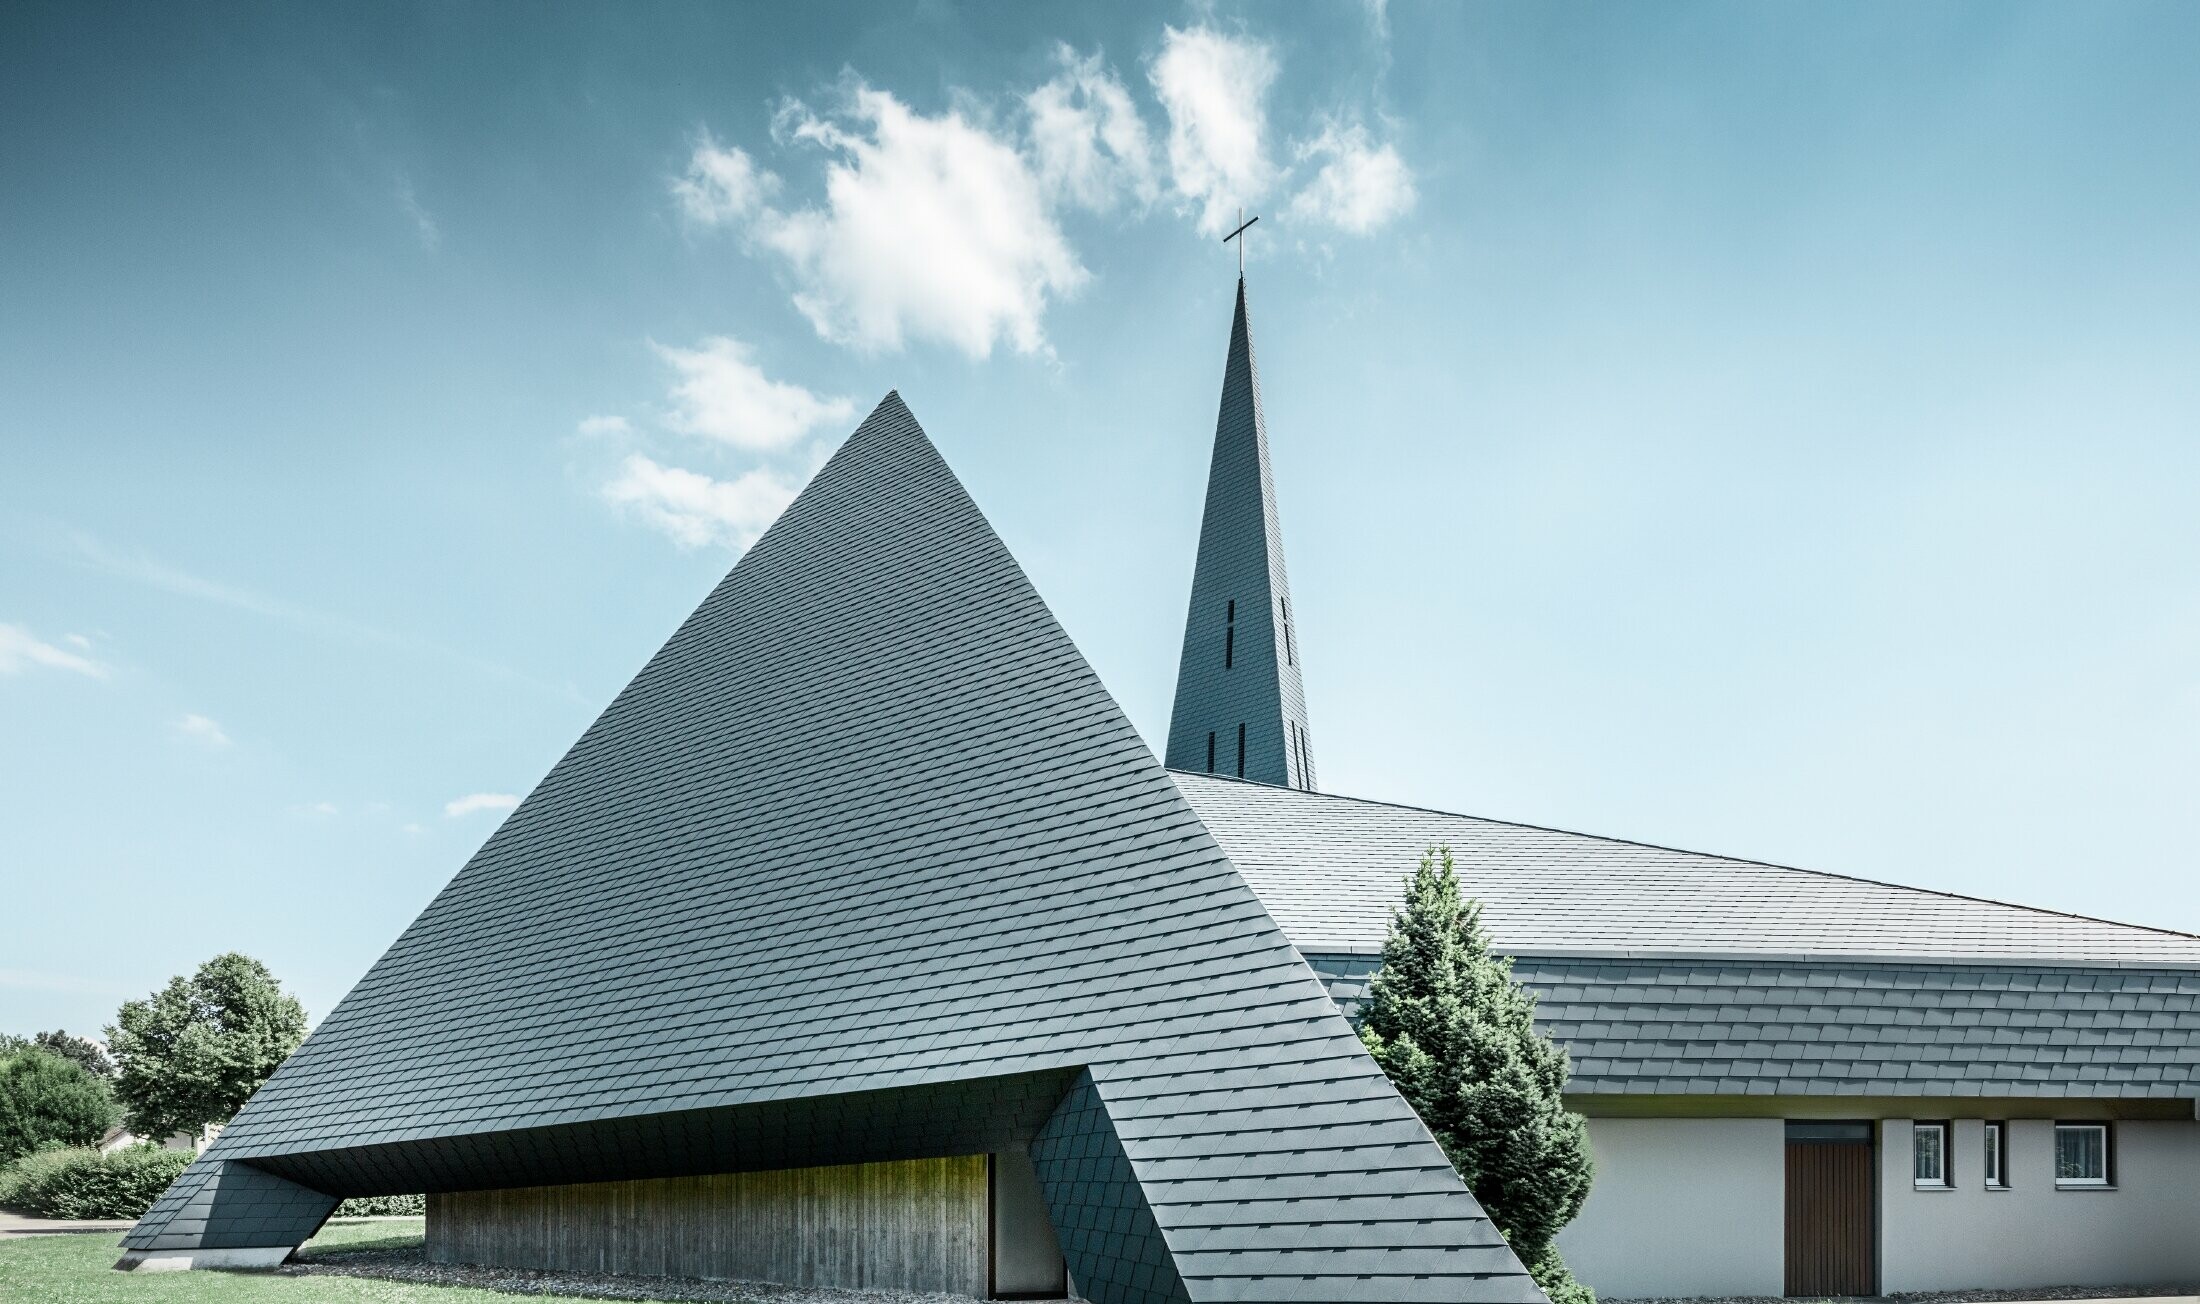 Église catholique de Langenau à la silhouette pyramidale — Couverture de toit réalisée avec des bardeaux en aluminium PREFA de couleur anthracite